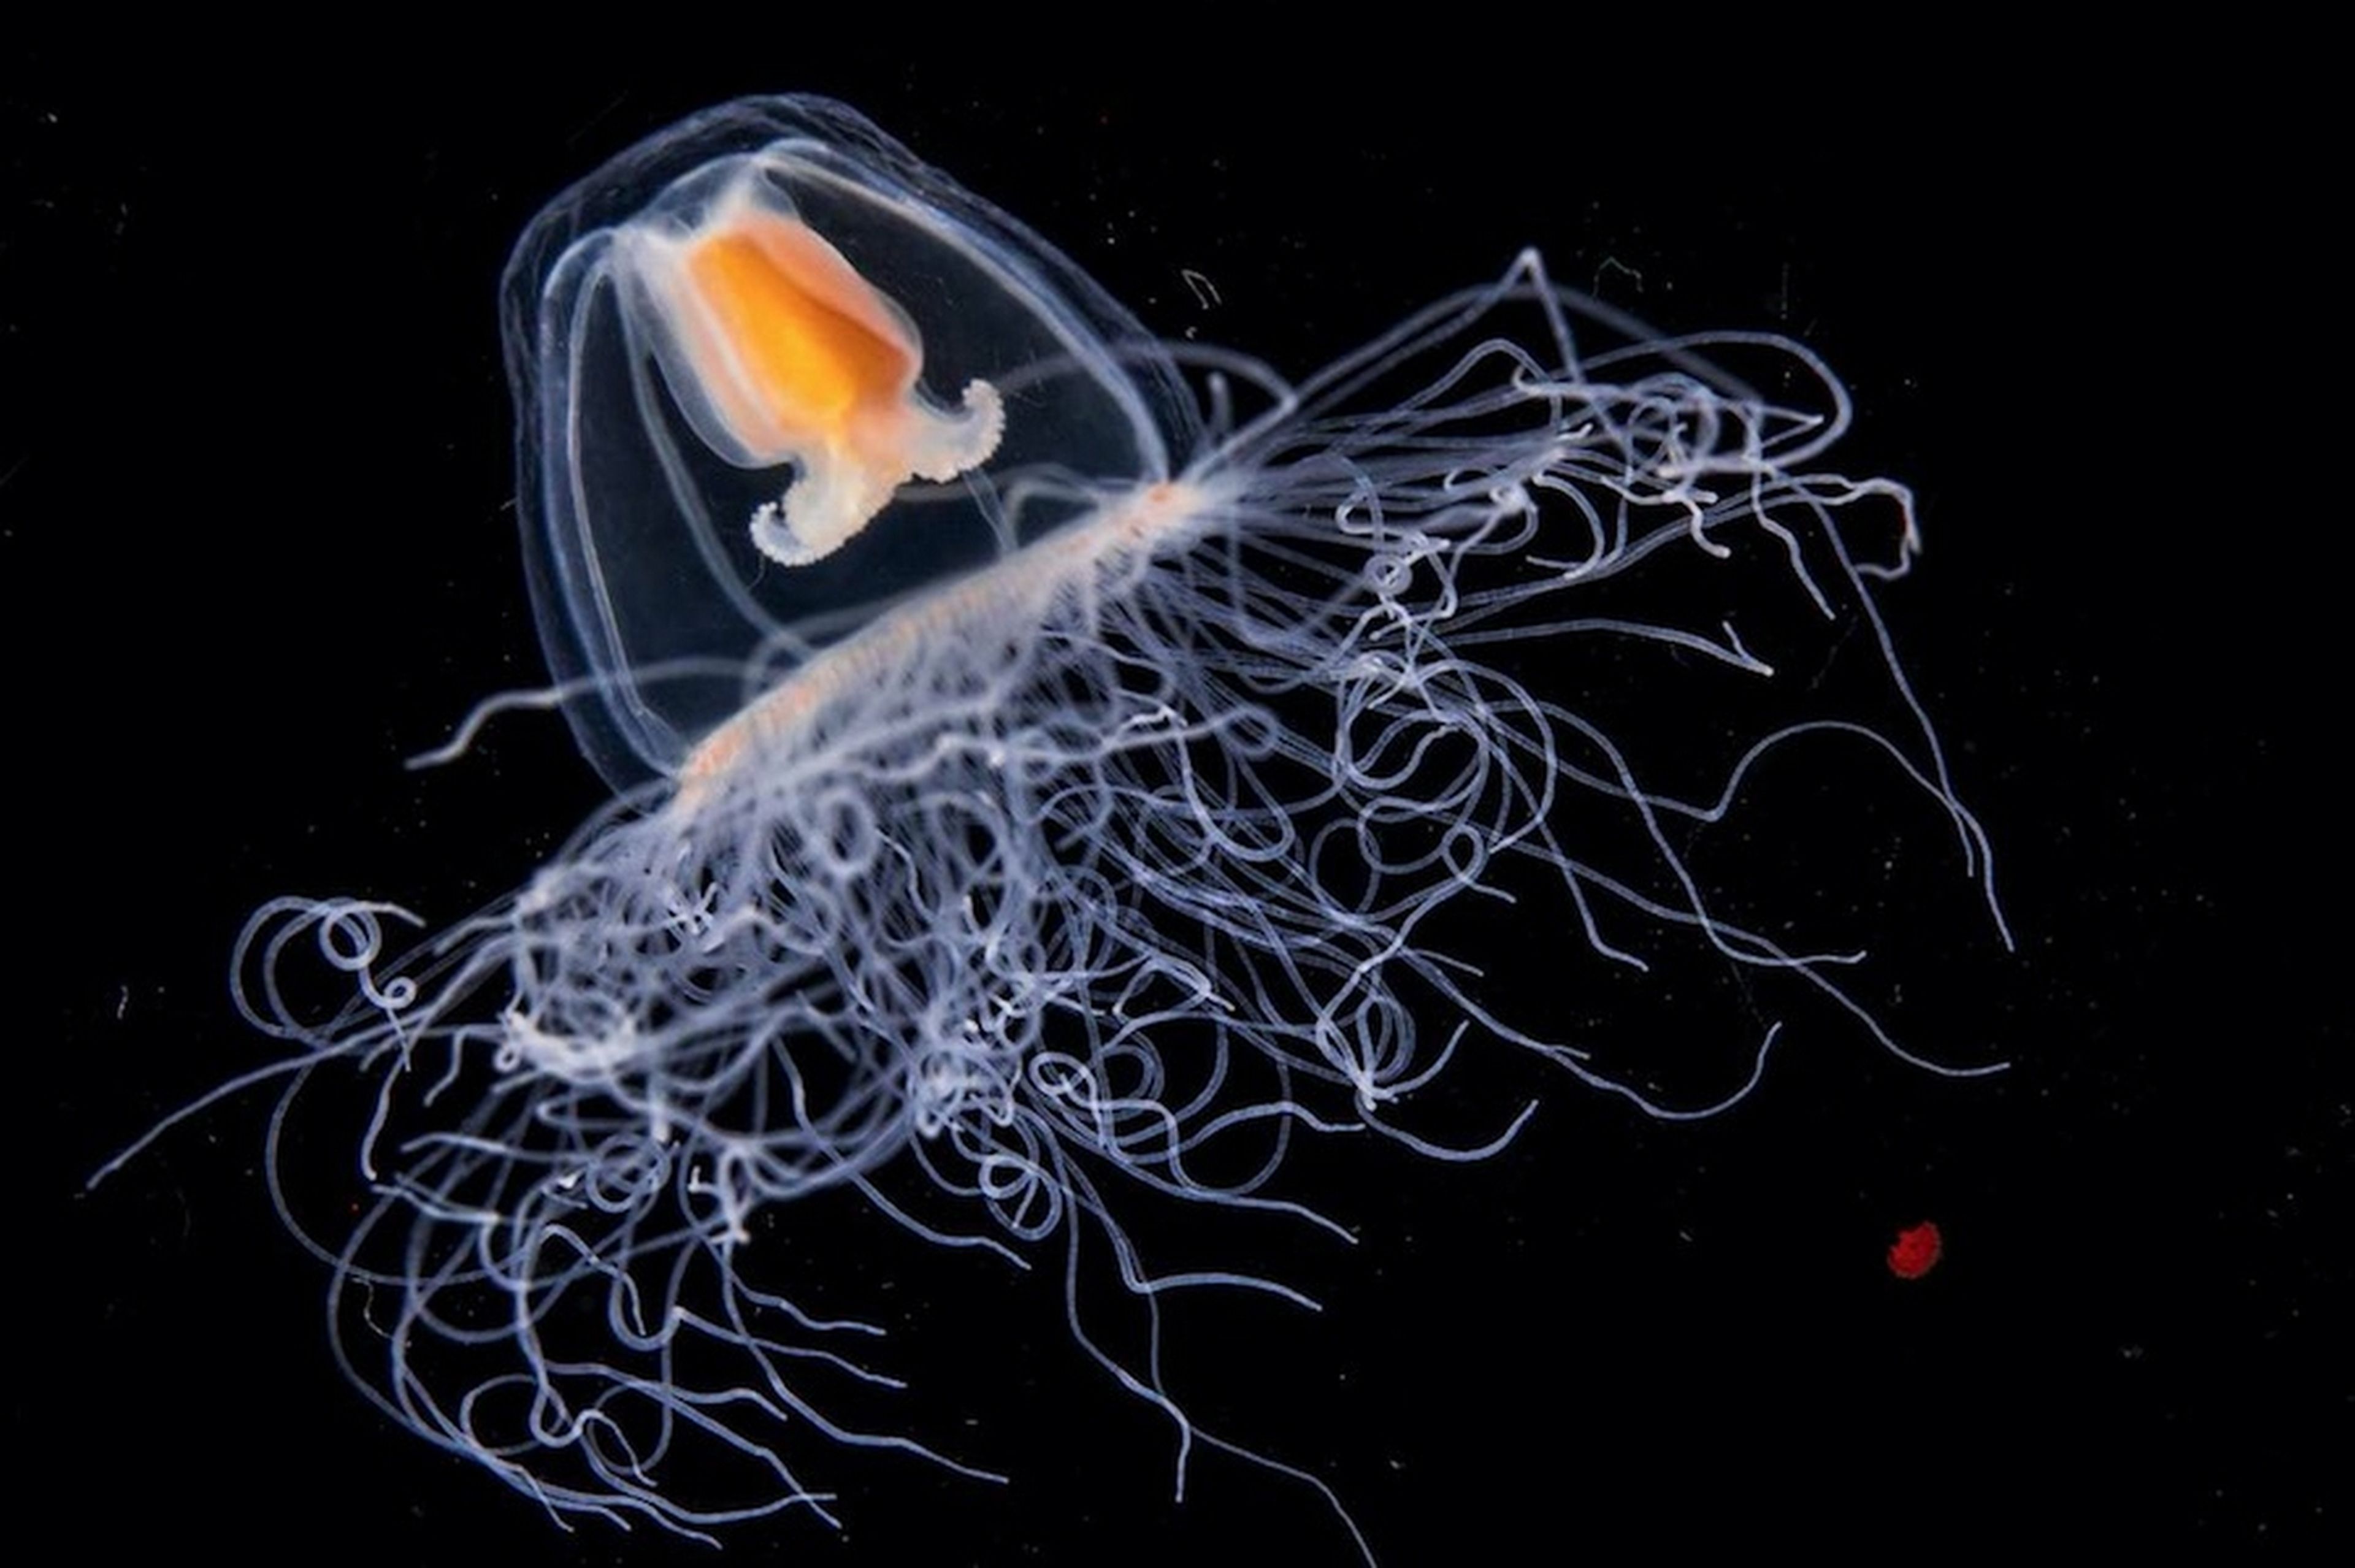 La medusa inmortal: cuando envejece vuelve a la adolescencia para comenzar otra vez su ciclo de vida